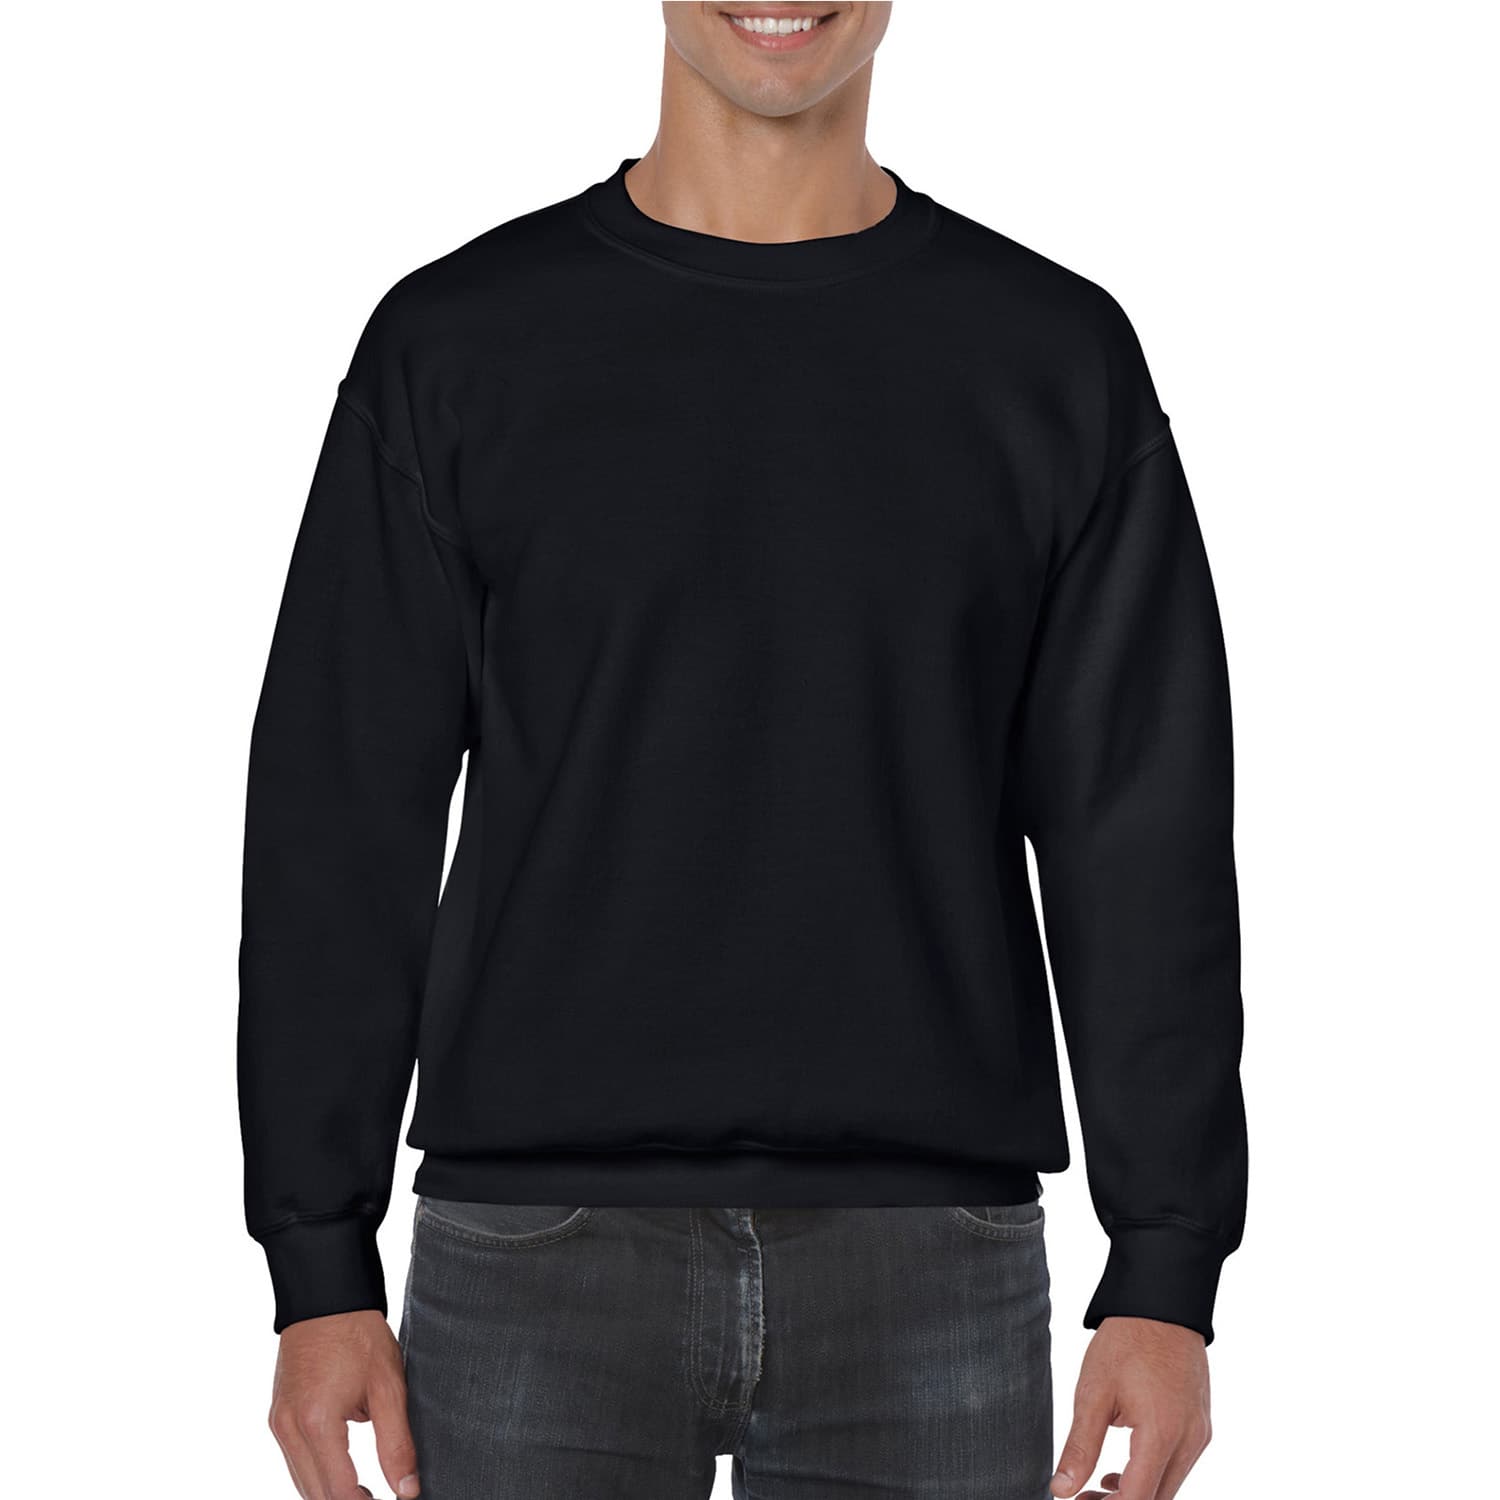 Buy in Bulk - 6 Pack: Gildan® Men's Crewneck Sweatshirt | Michaels